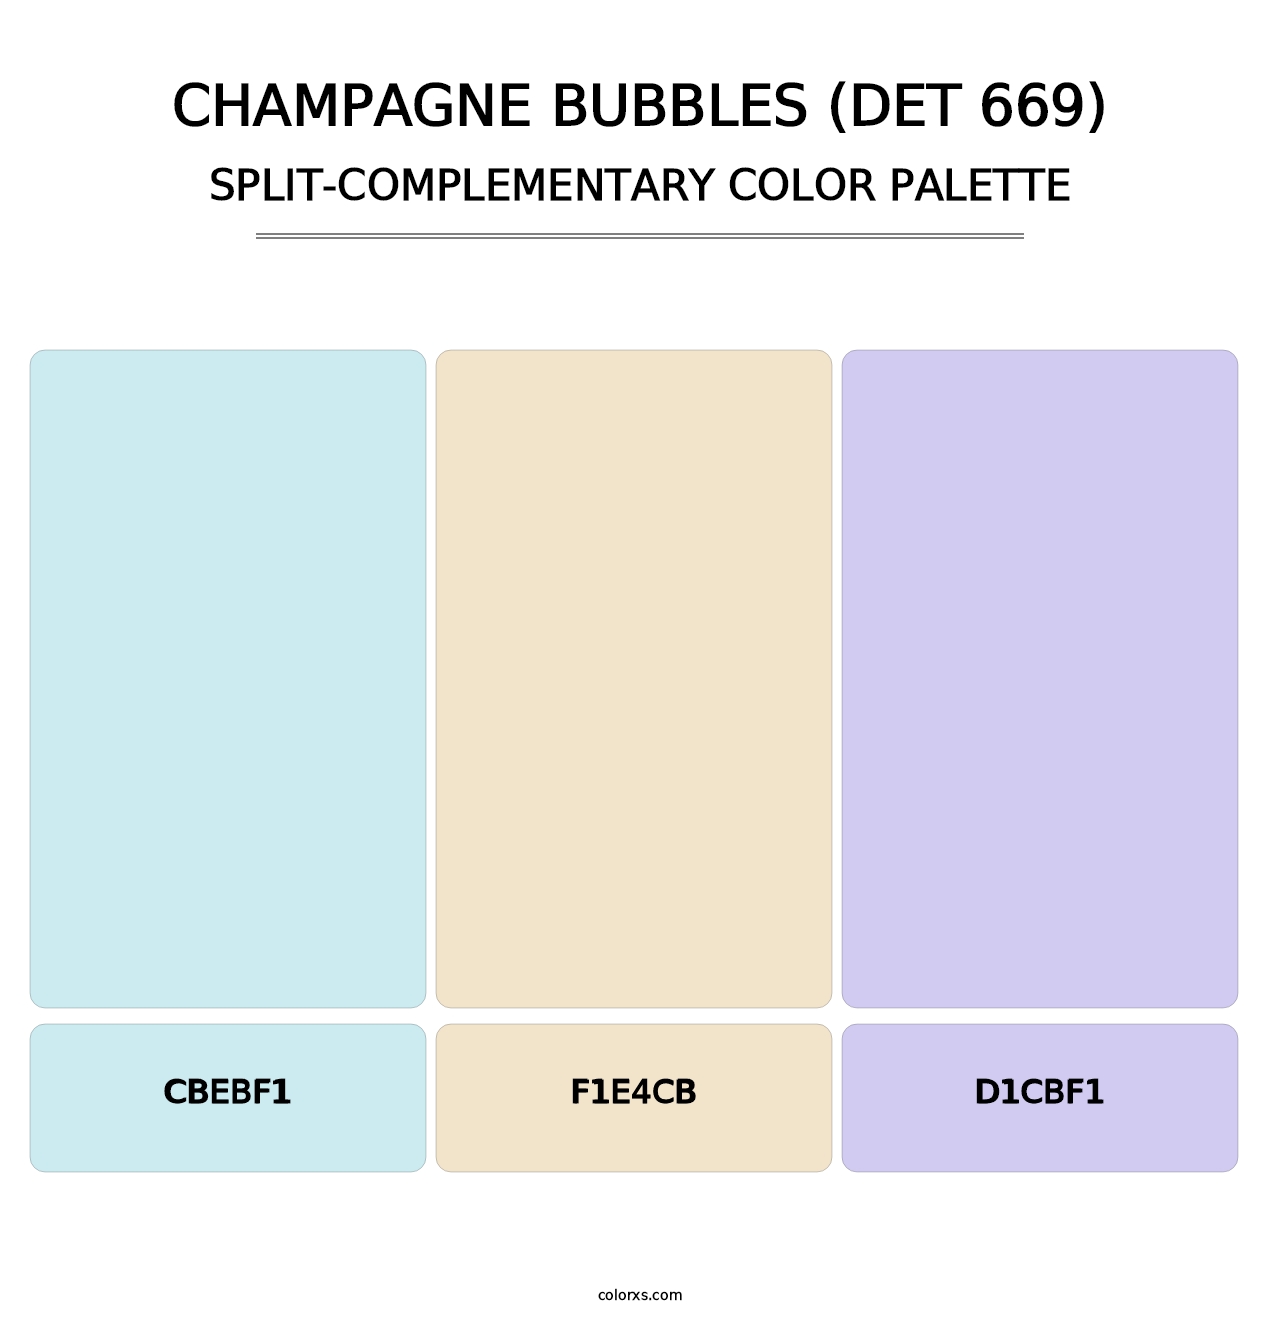 Champagne Bubbles (DET 669) - Split-Complementary Color Palette